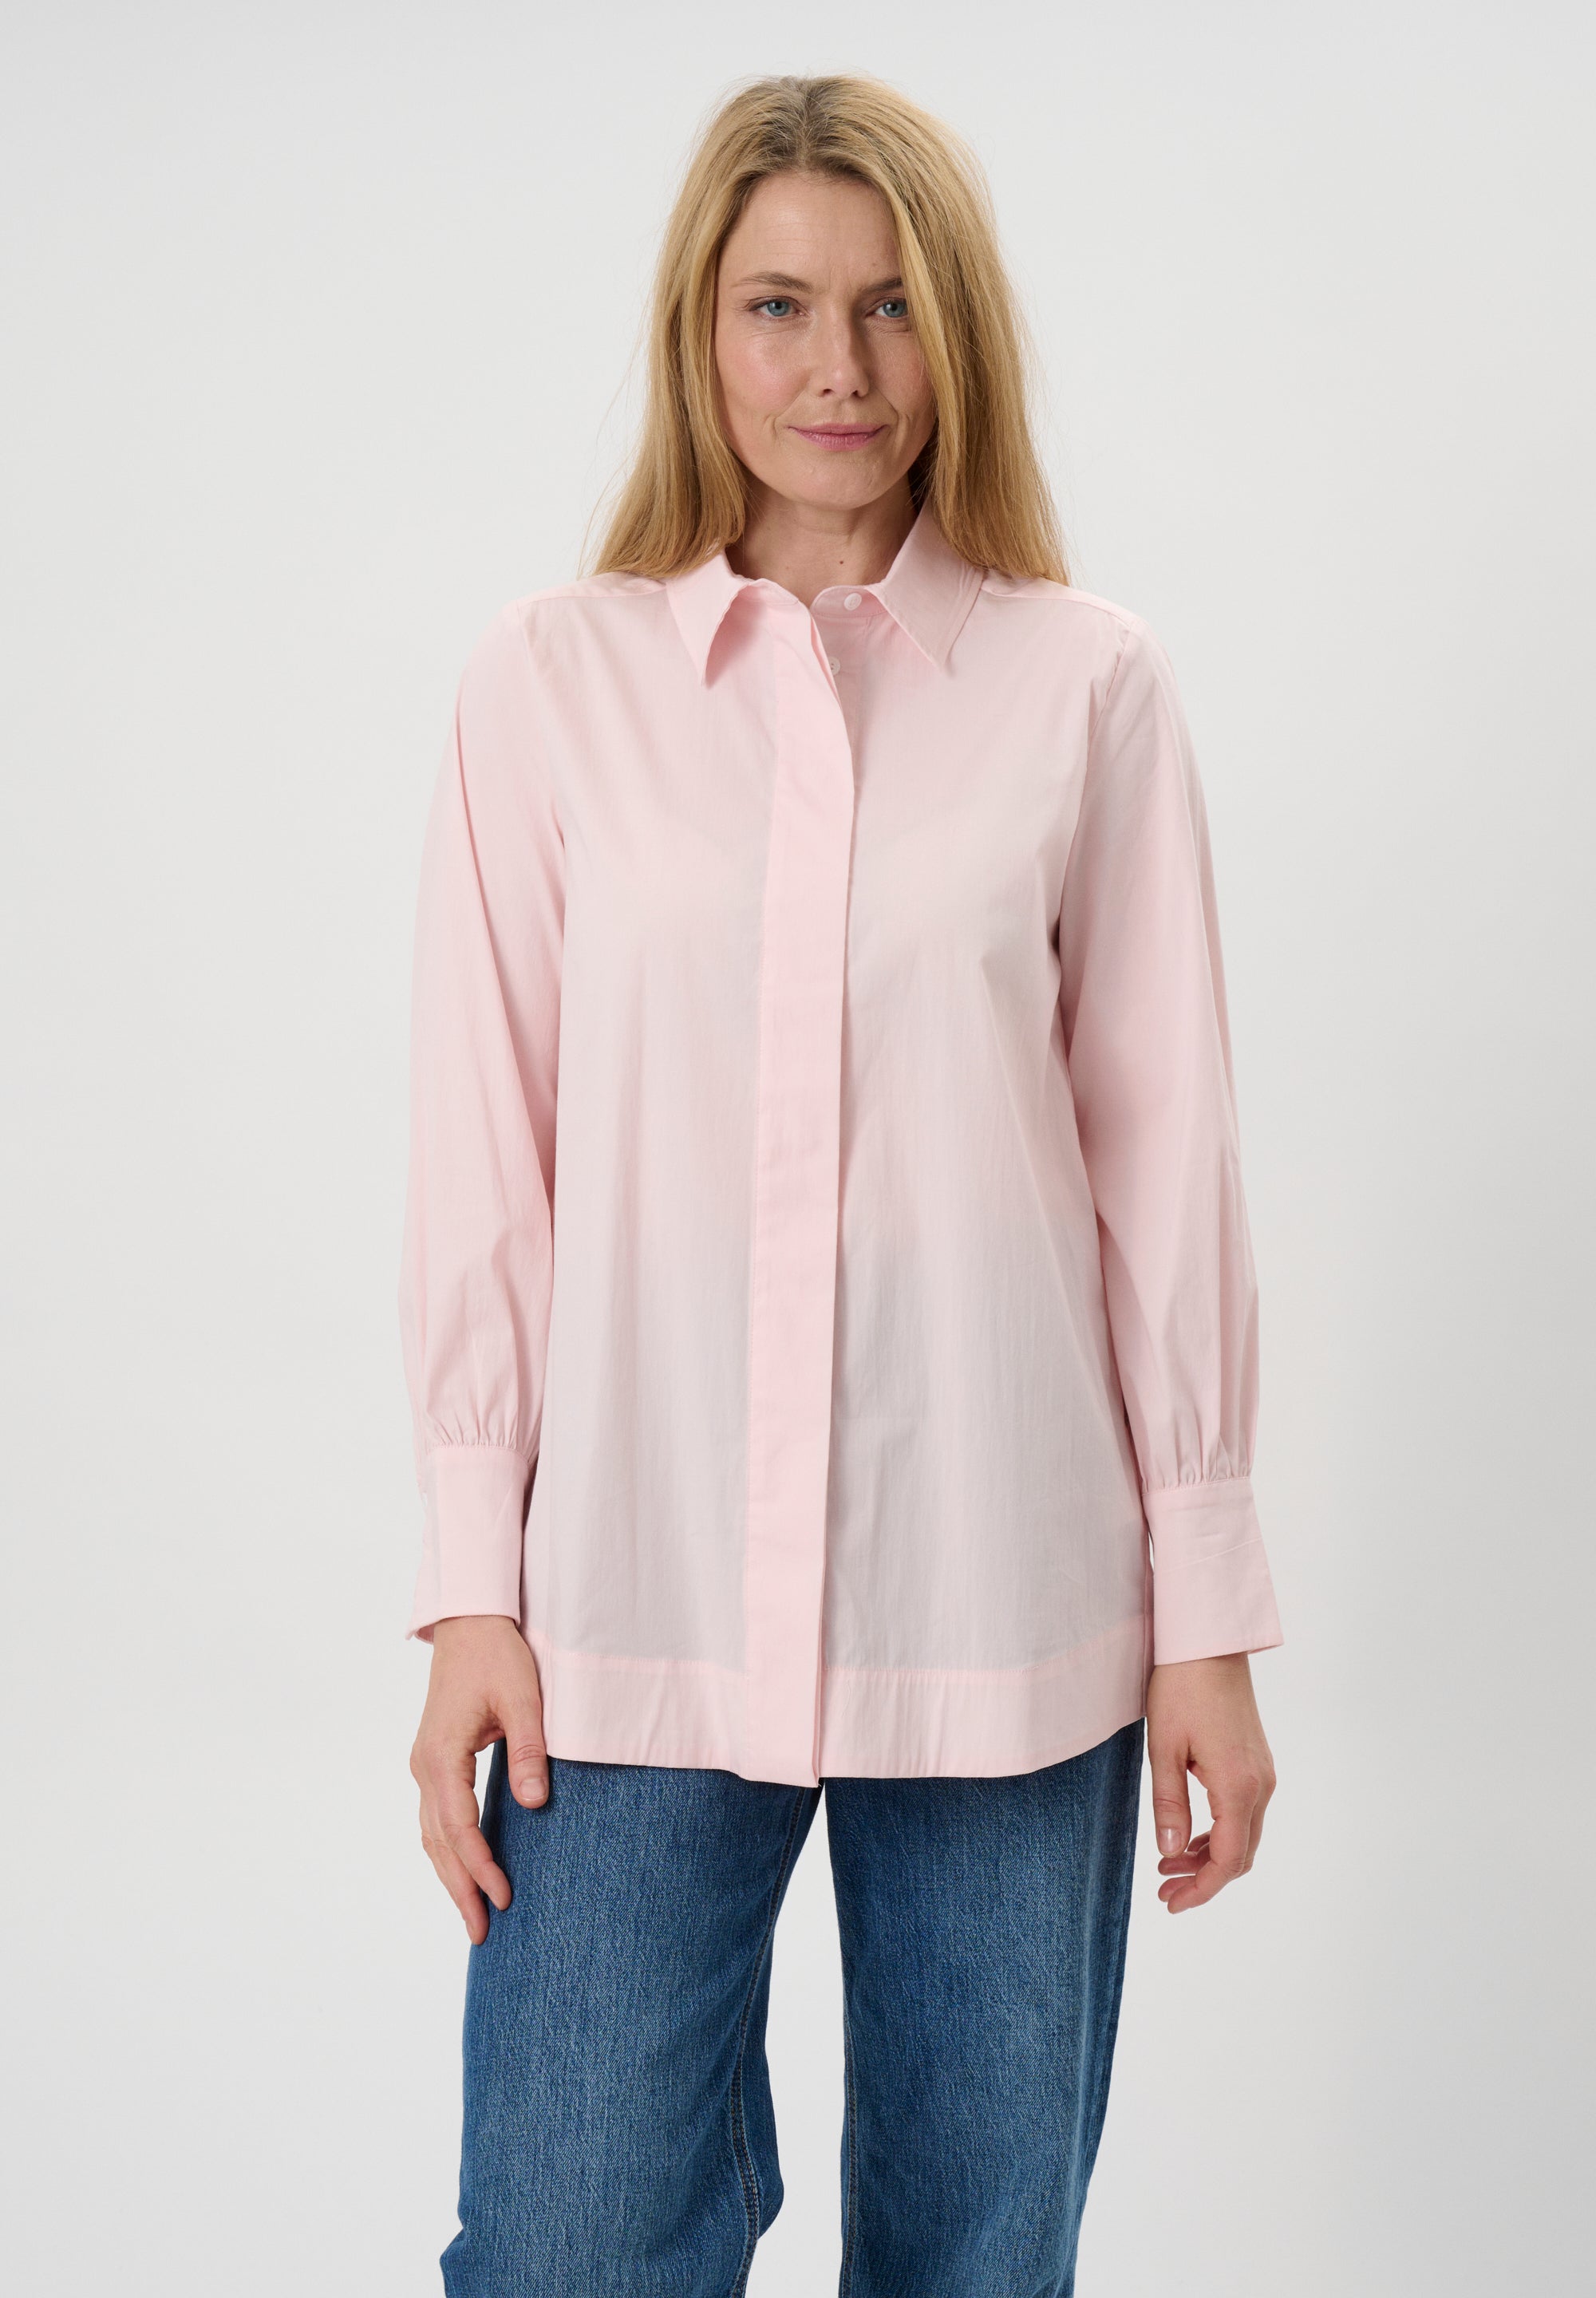 Se Shsigne - Crystal Pink - Skjorte hos Gowoman.dk